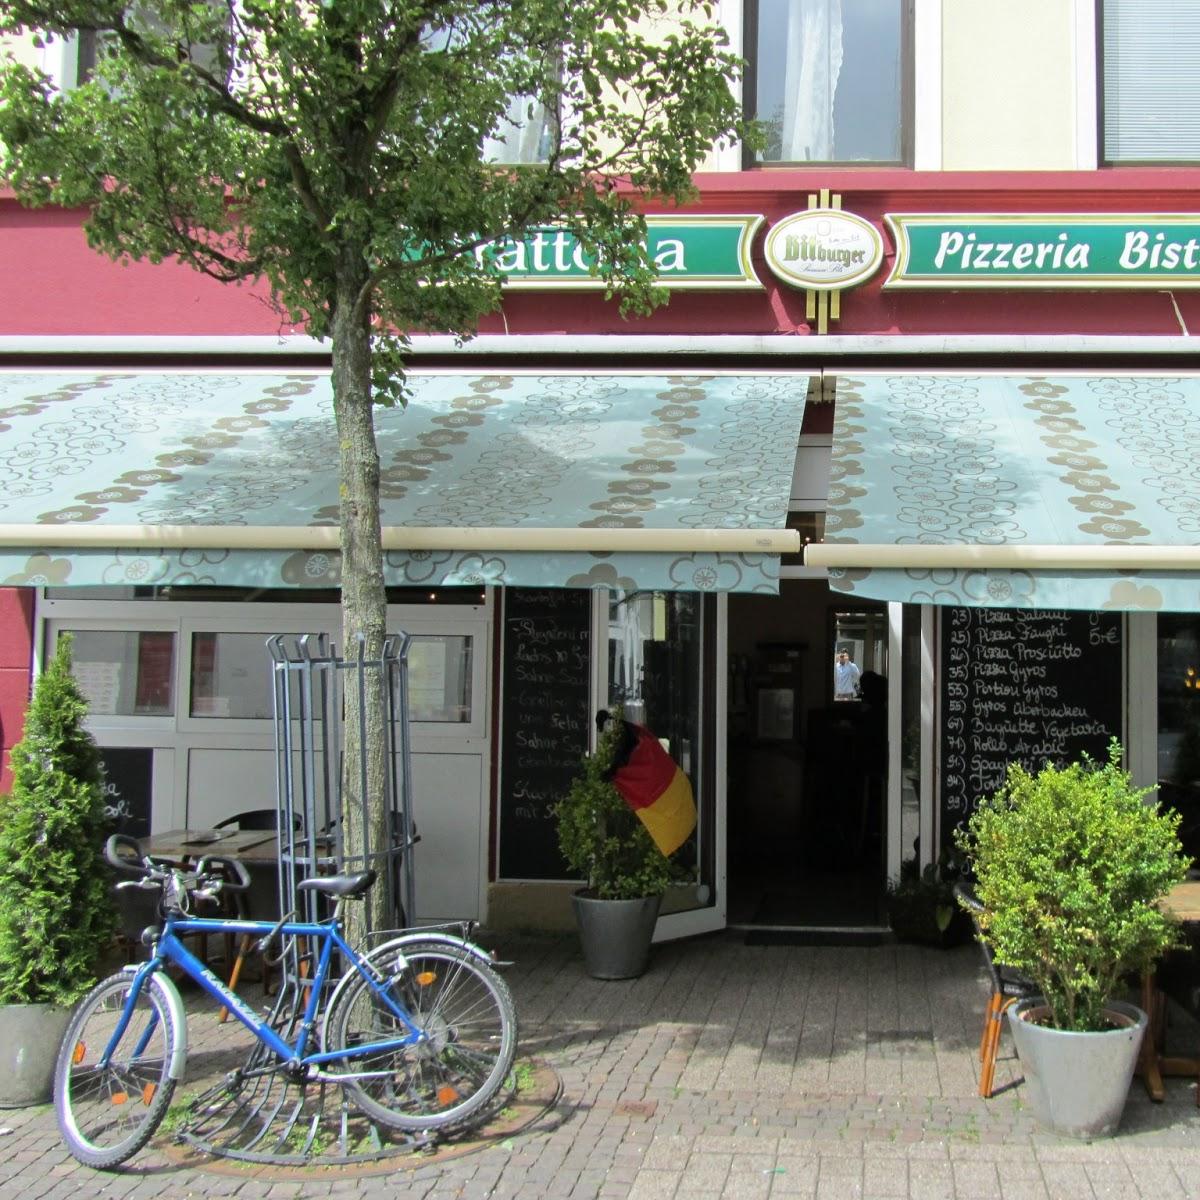 Restaurant "Trattoria" in Oldenburg